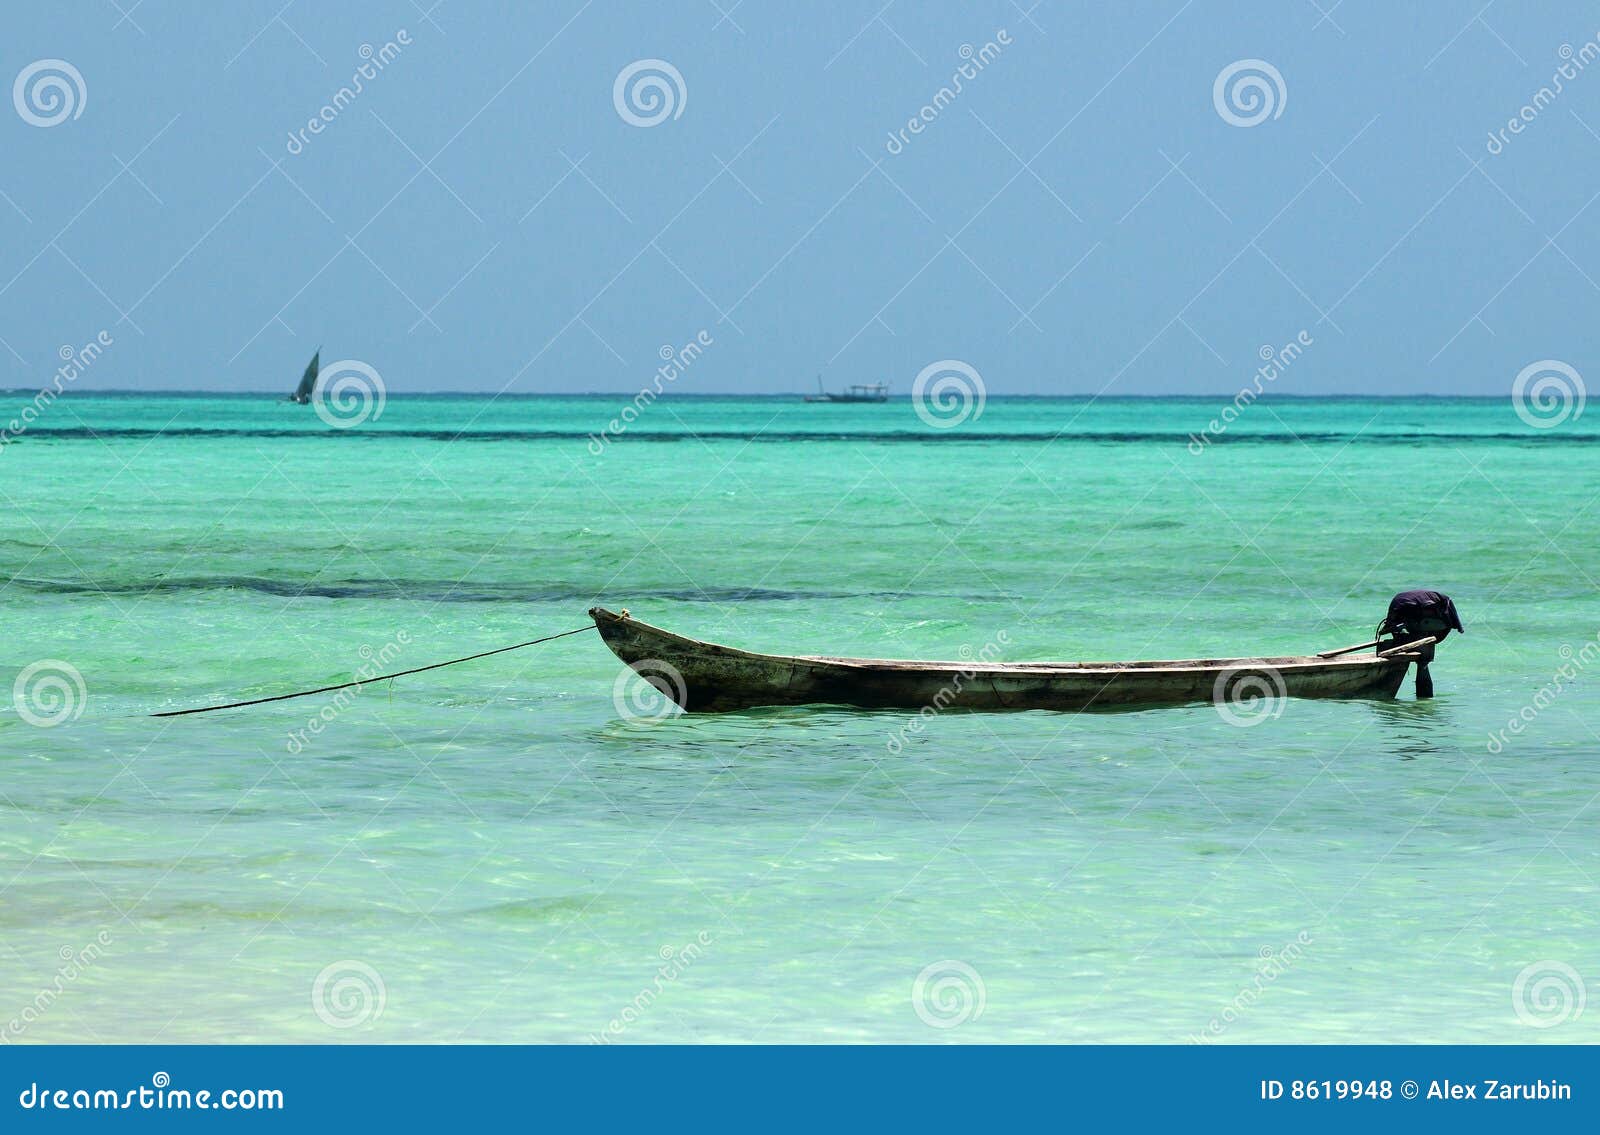 Royalty Free Stock Photos: Local boat at Zanzibar beach